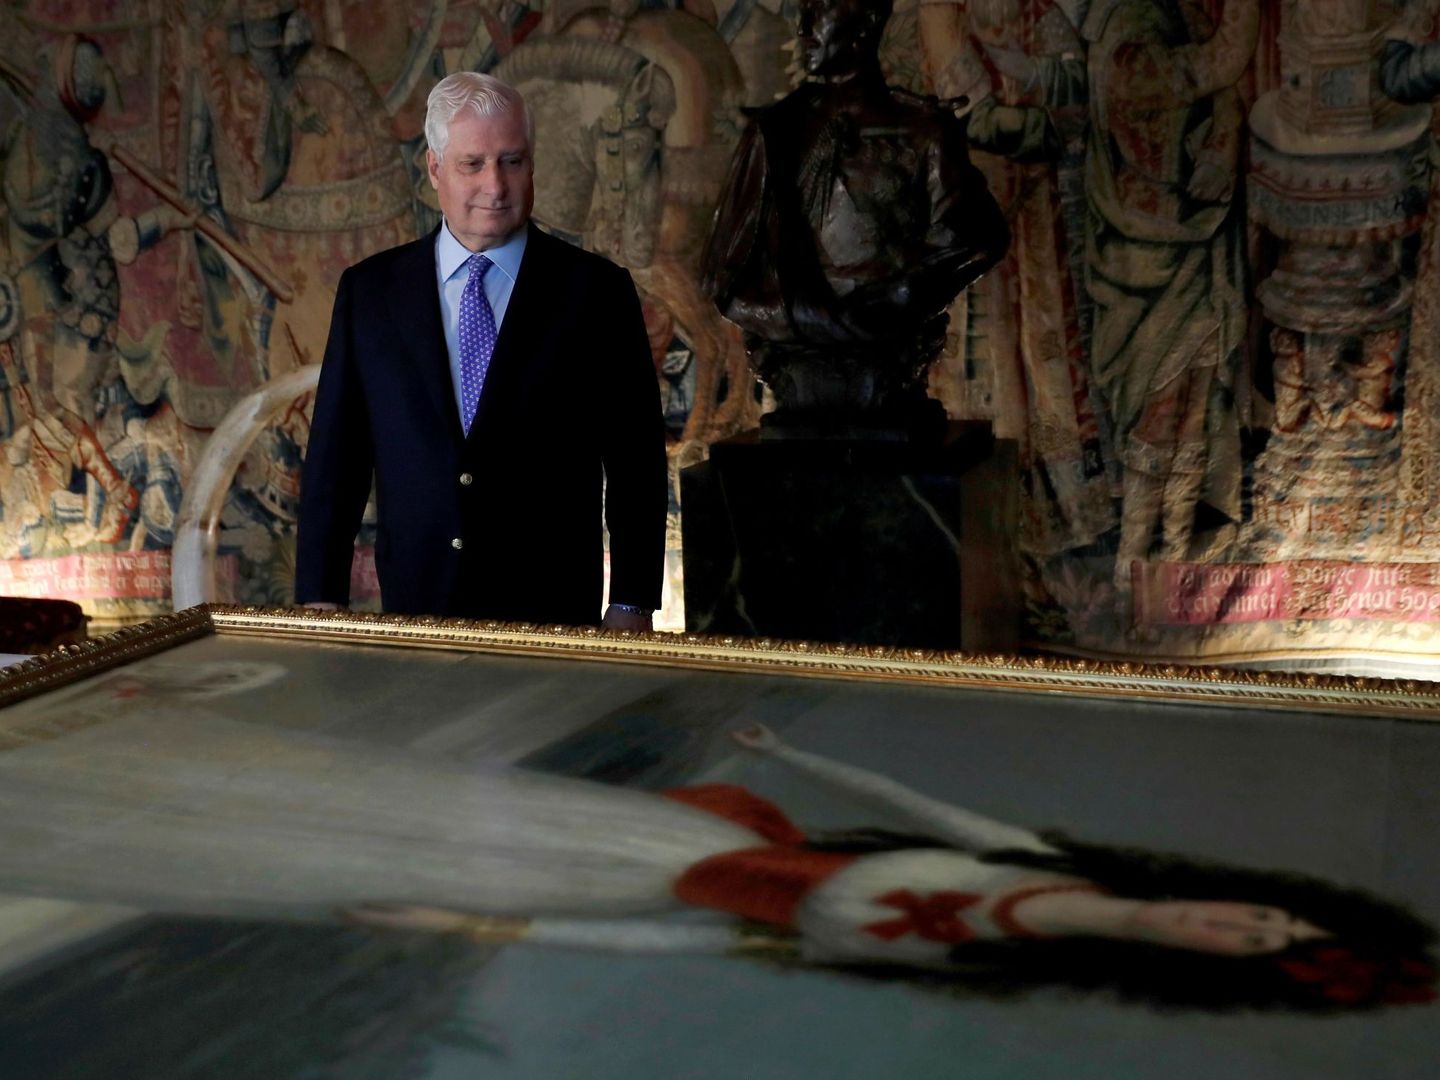 El duque de Alba contempla el famoso cuadro de Goya de su antepasada en el palacio de Liria. (EFE)